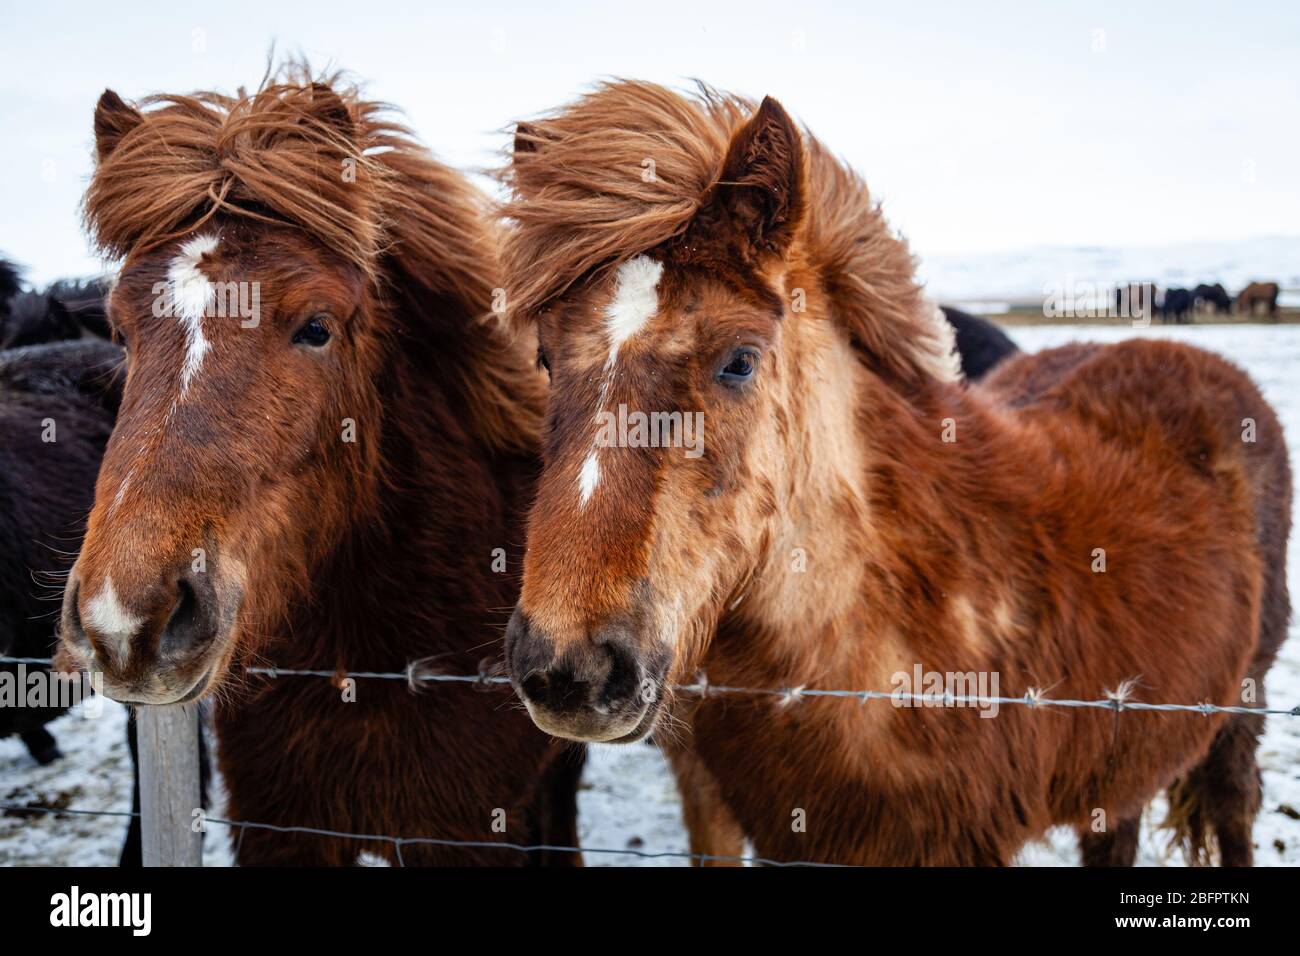 Gros plan de deux chevaux islandais (Equus ferus cavallus) au vent dans le paysage enneigé islandais, Islande Banque D'Images